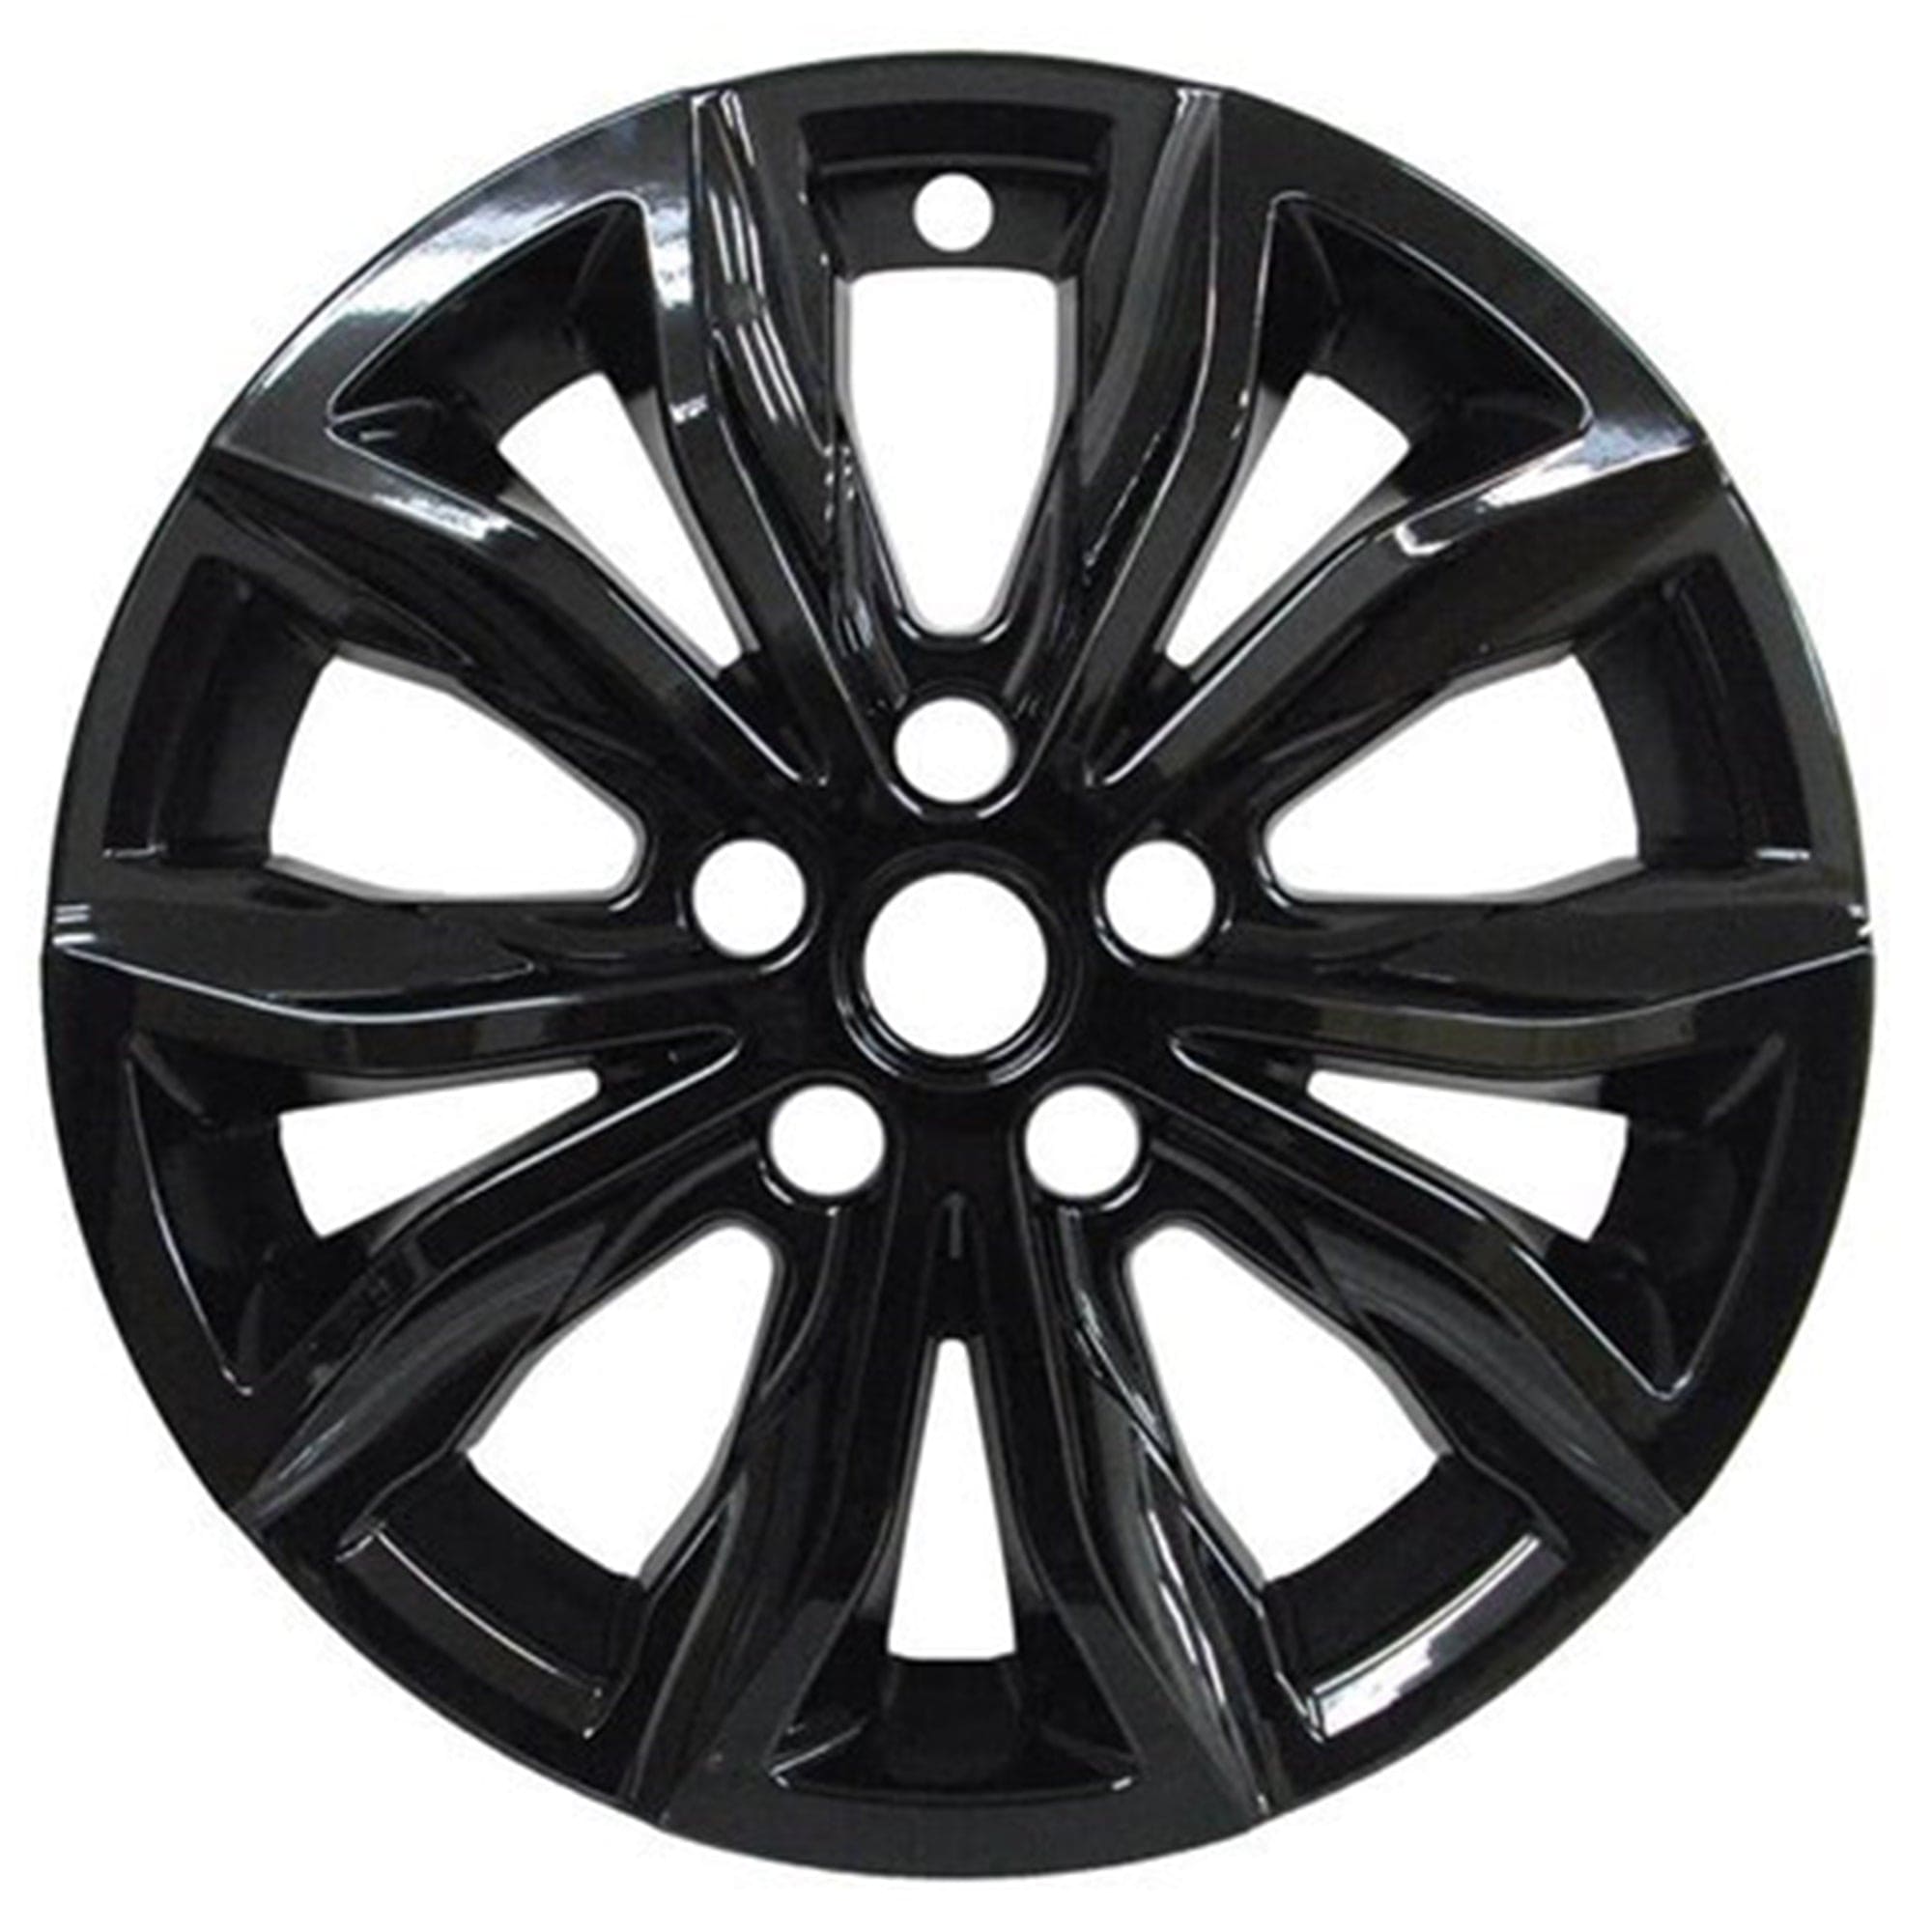 PacRim 7119-GB 17" Chevy Malibu LT (19-22) Gloss Black Wheel Skin Set